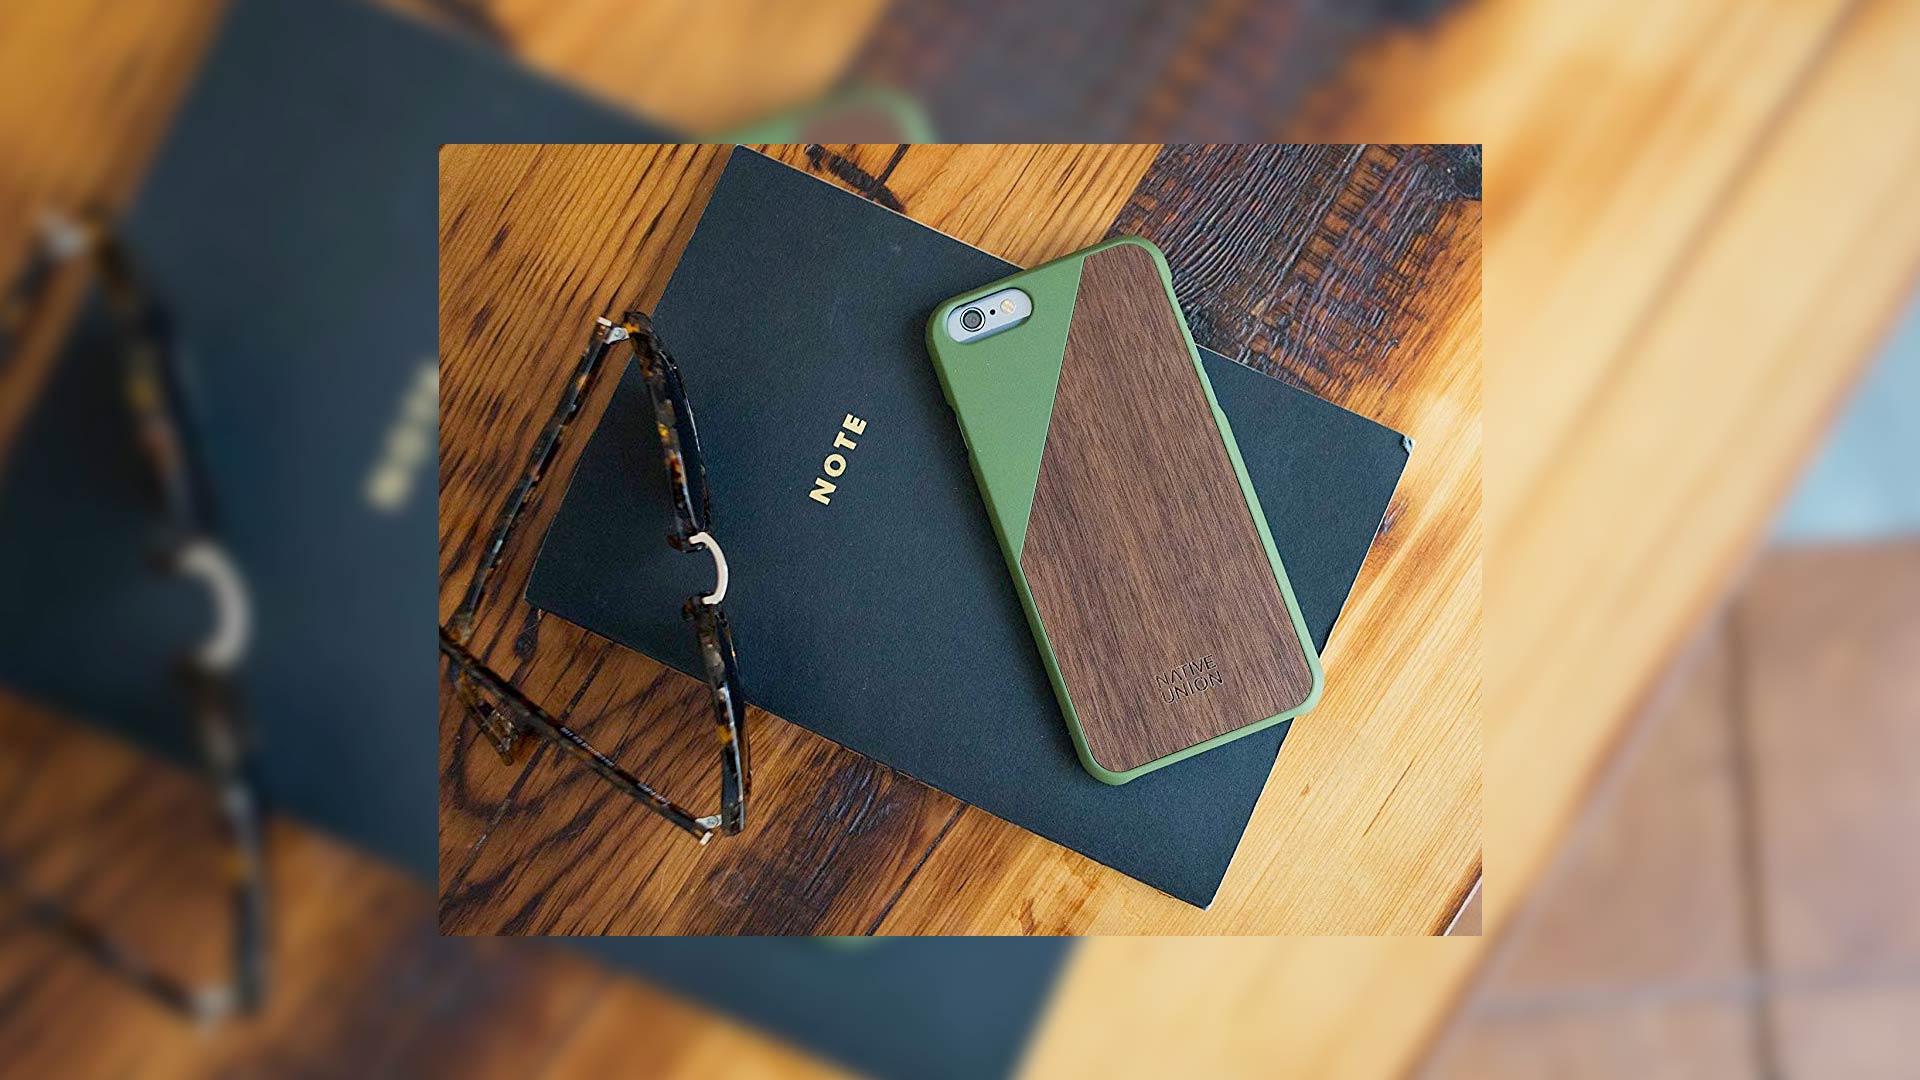 أفضل أغطية أيفون 6 / 6s خشبية في 2019: أغطية أيفون 6 خشبية مصنوعة يدوياً ، مثالية ل iPhone 6